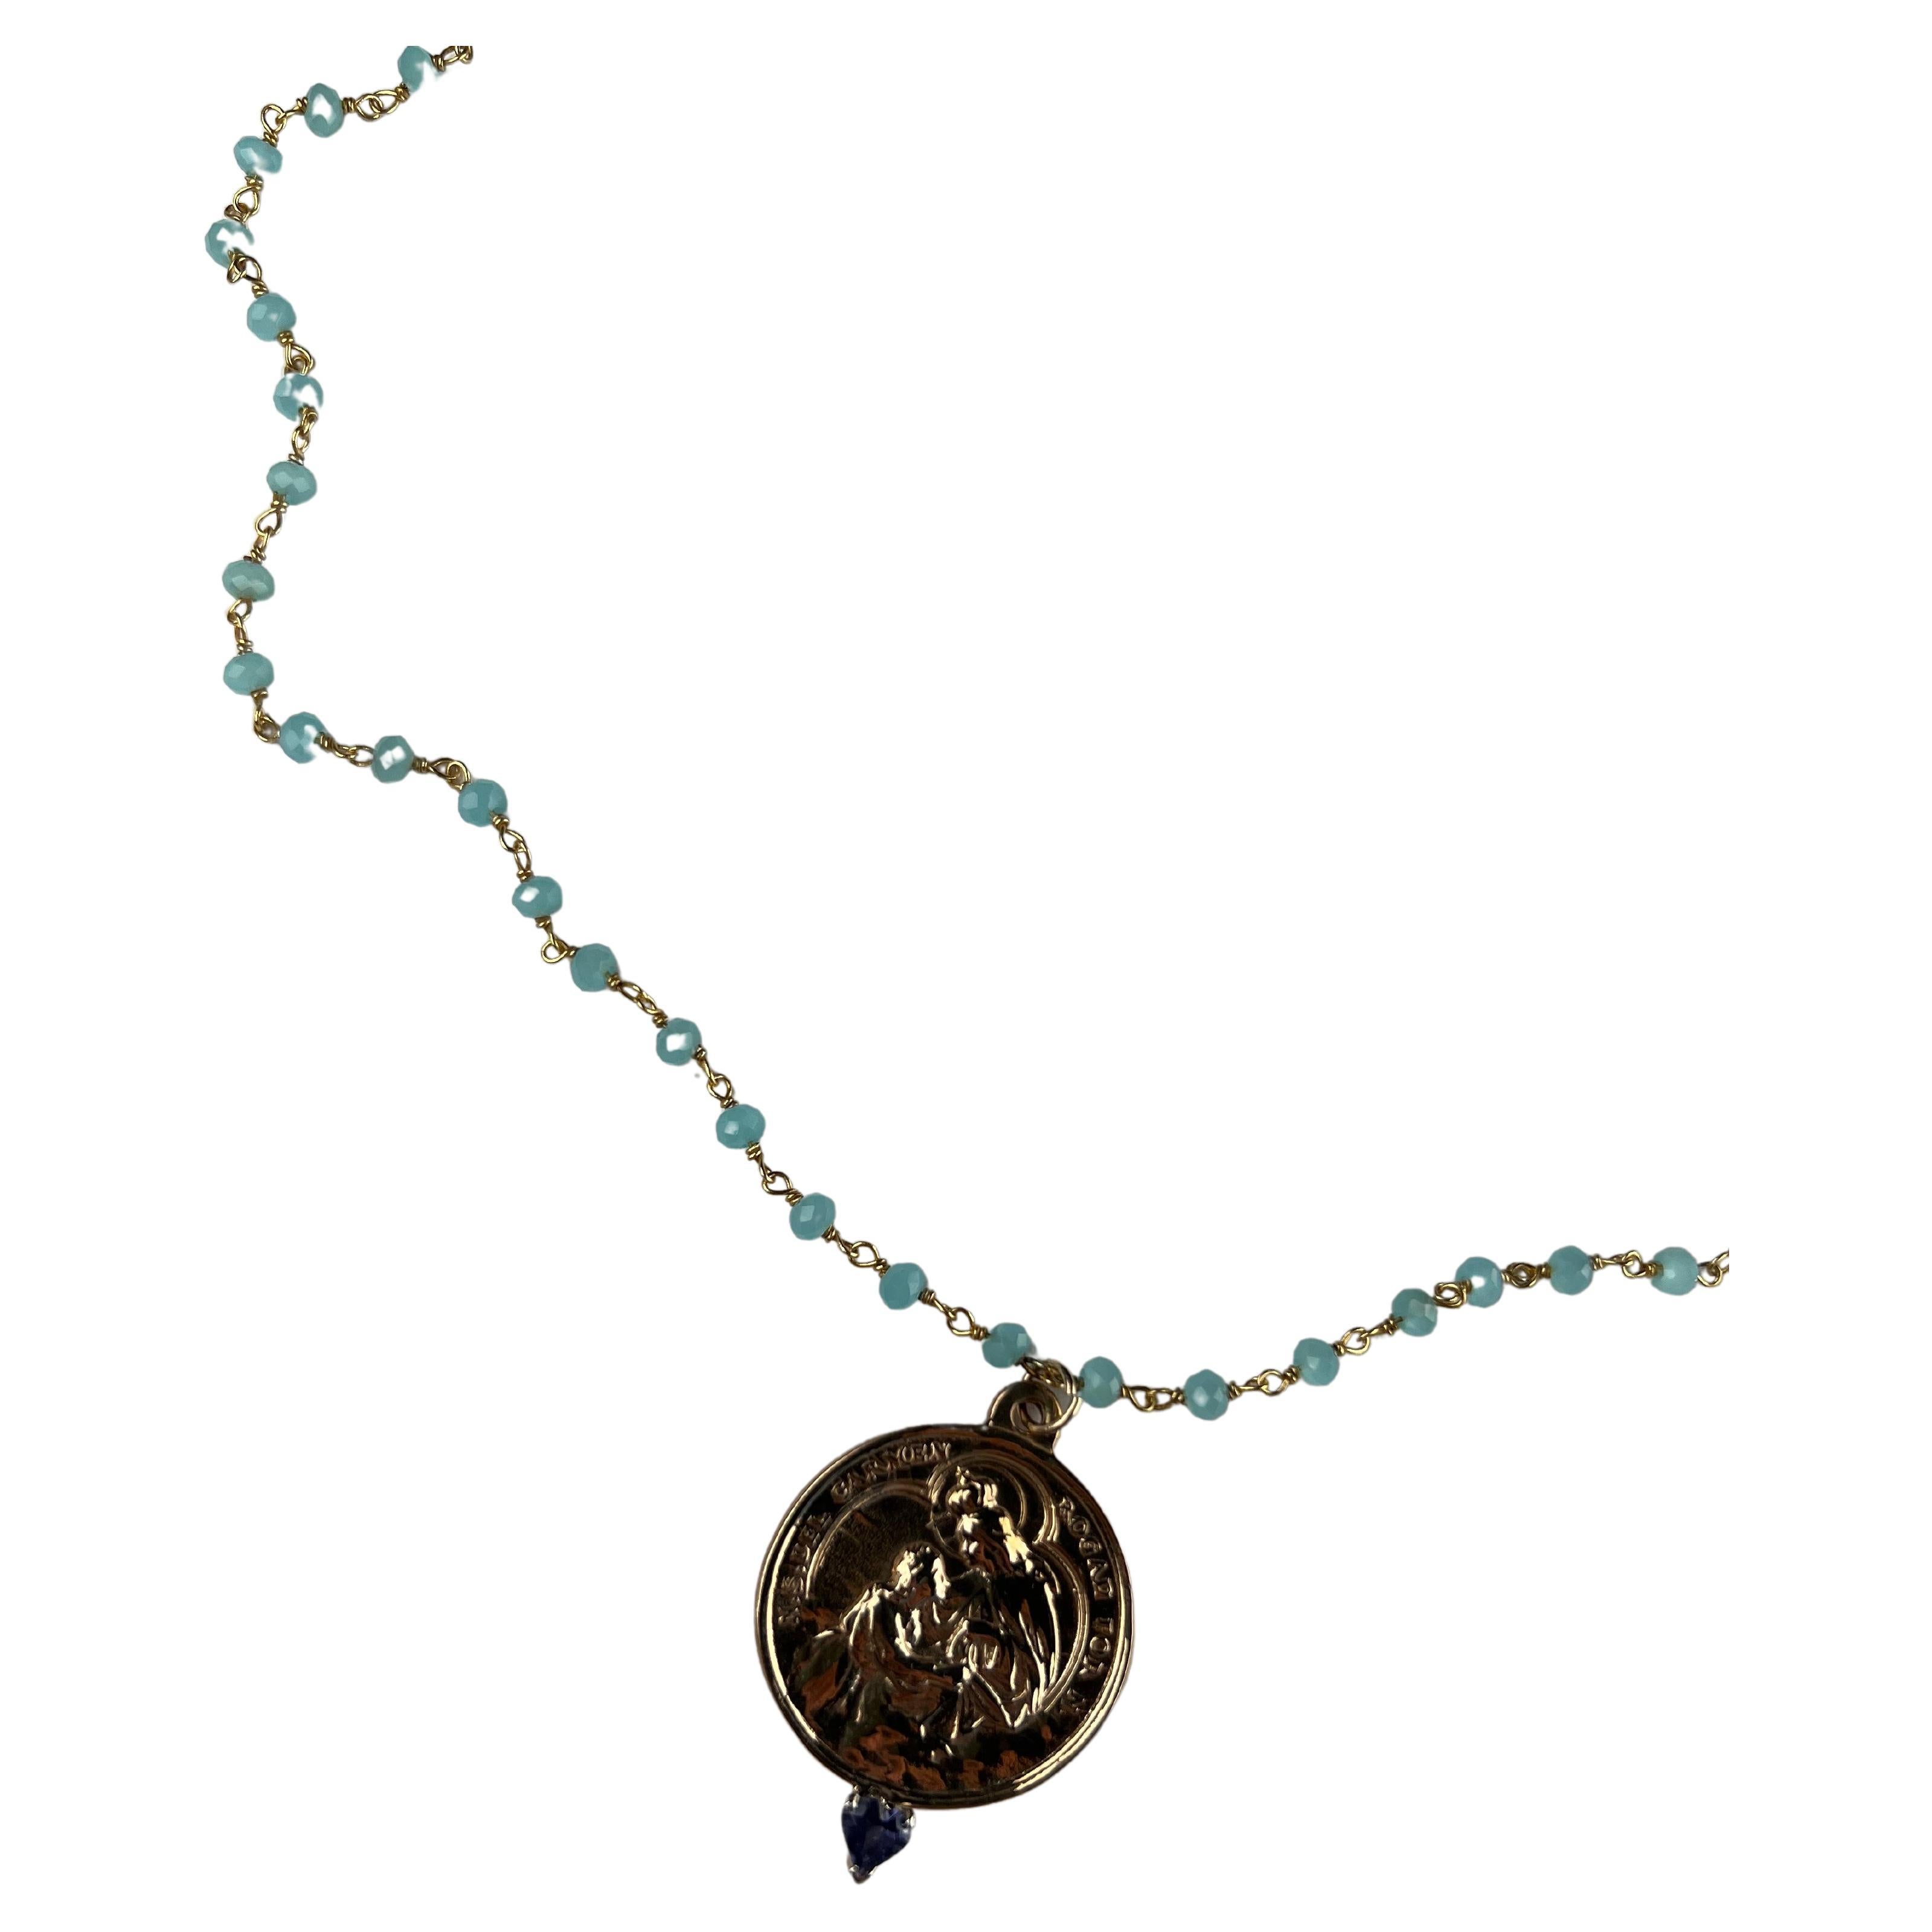 Coeur de tanzanite serti à la broche sur une médaille de vierge sur une chaîne rosario Pierres bleues Longueur 26 pouces
Concepteur : J Dauphin

La tanzanite est réputée stimuler la gorge, le troisième œil, le chakra couronne et les chakras